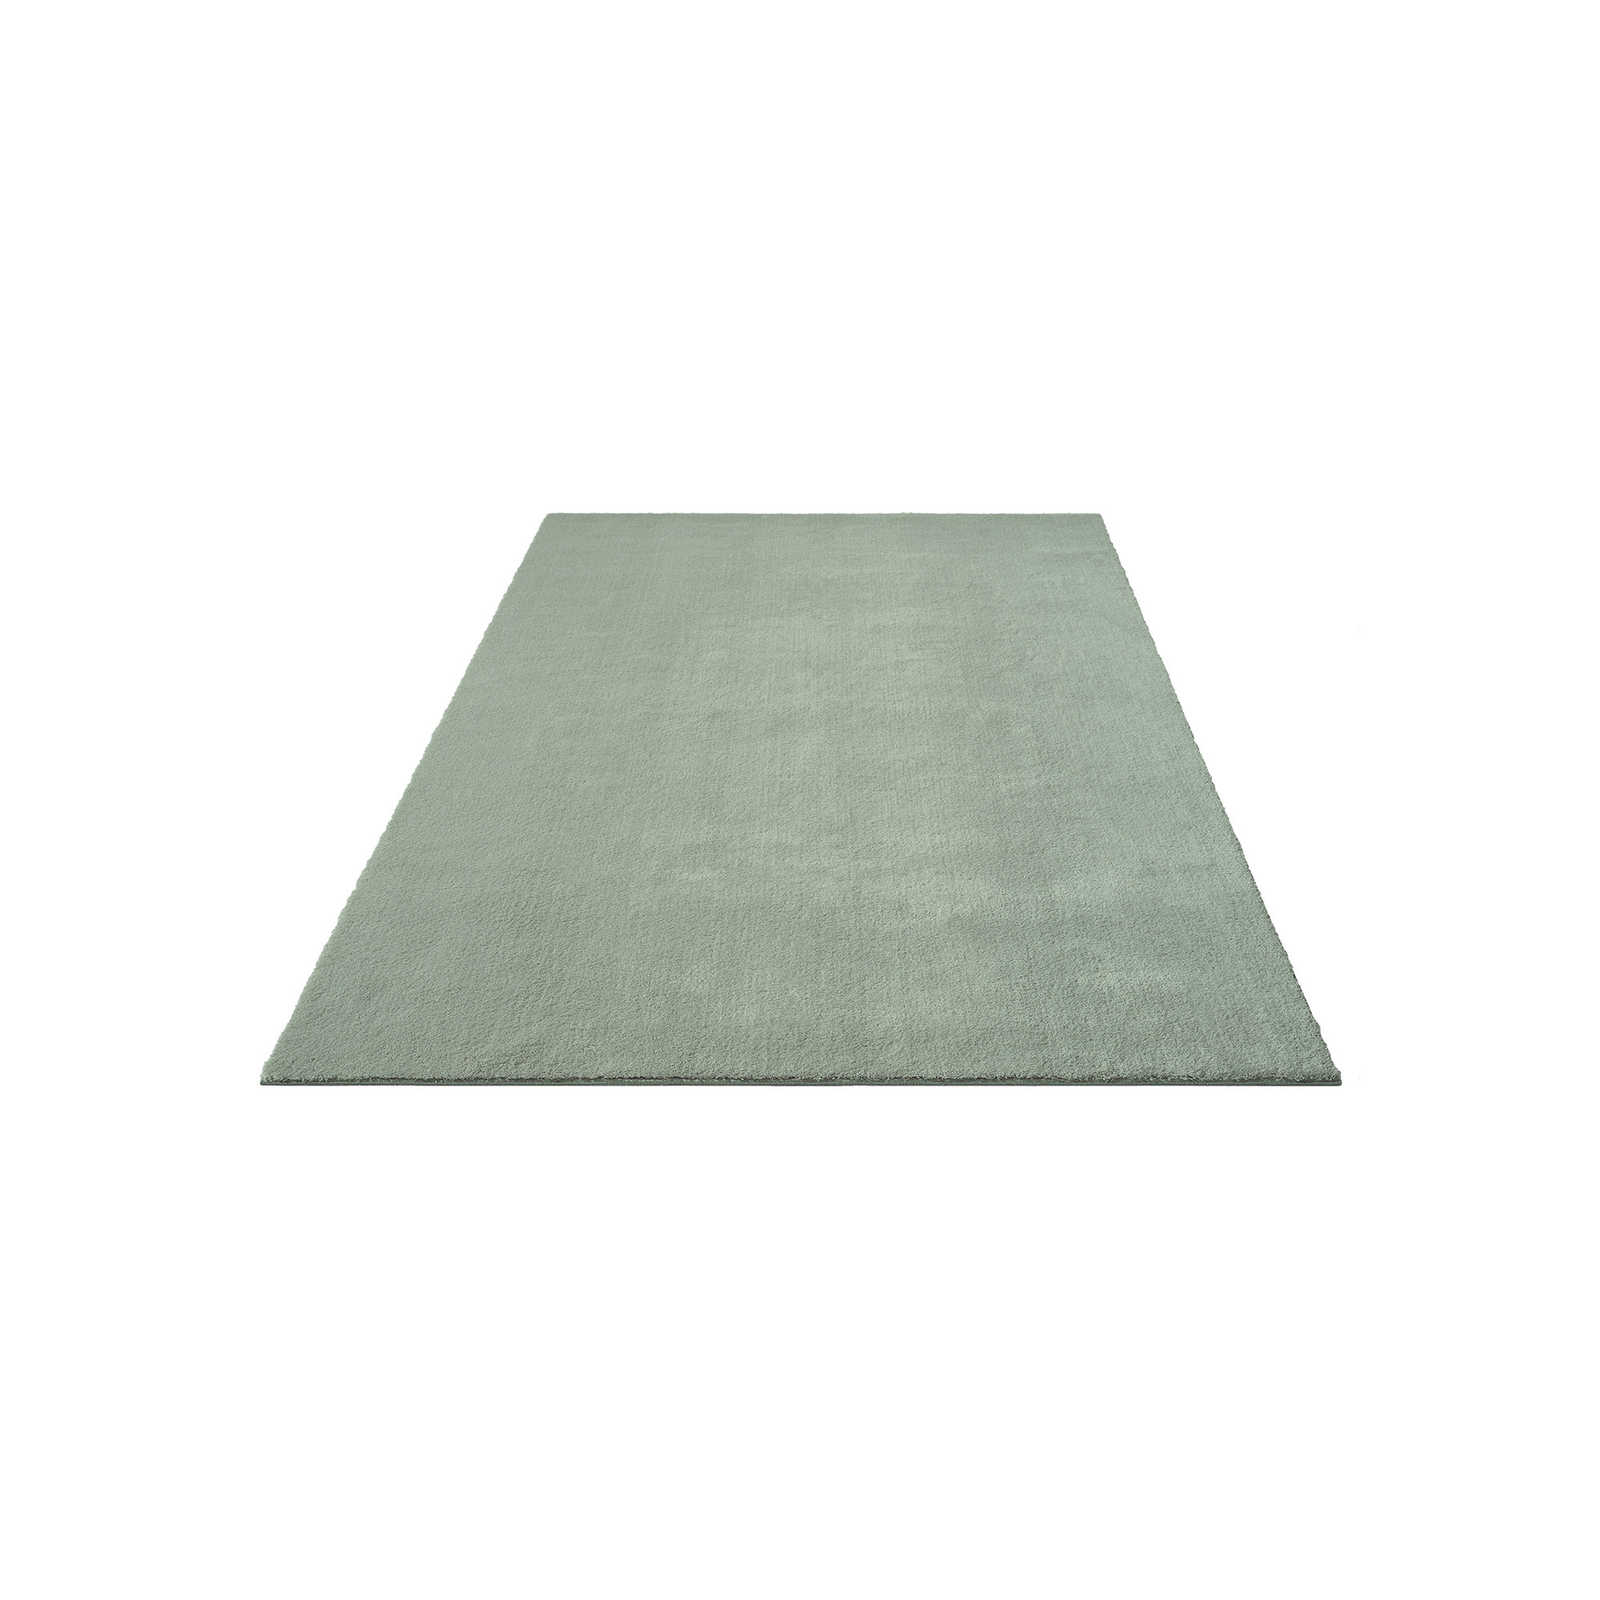 Zachtpolig tapijt in groen - 230 x 160 cm
